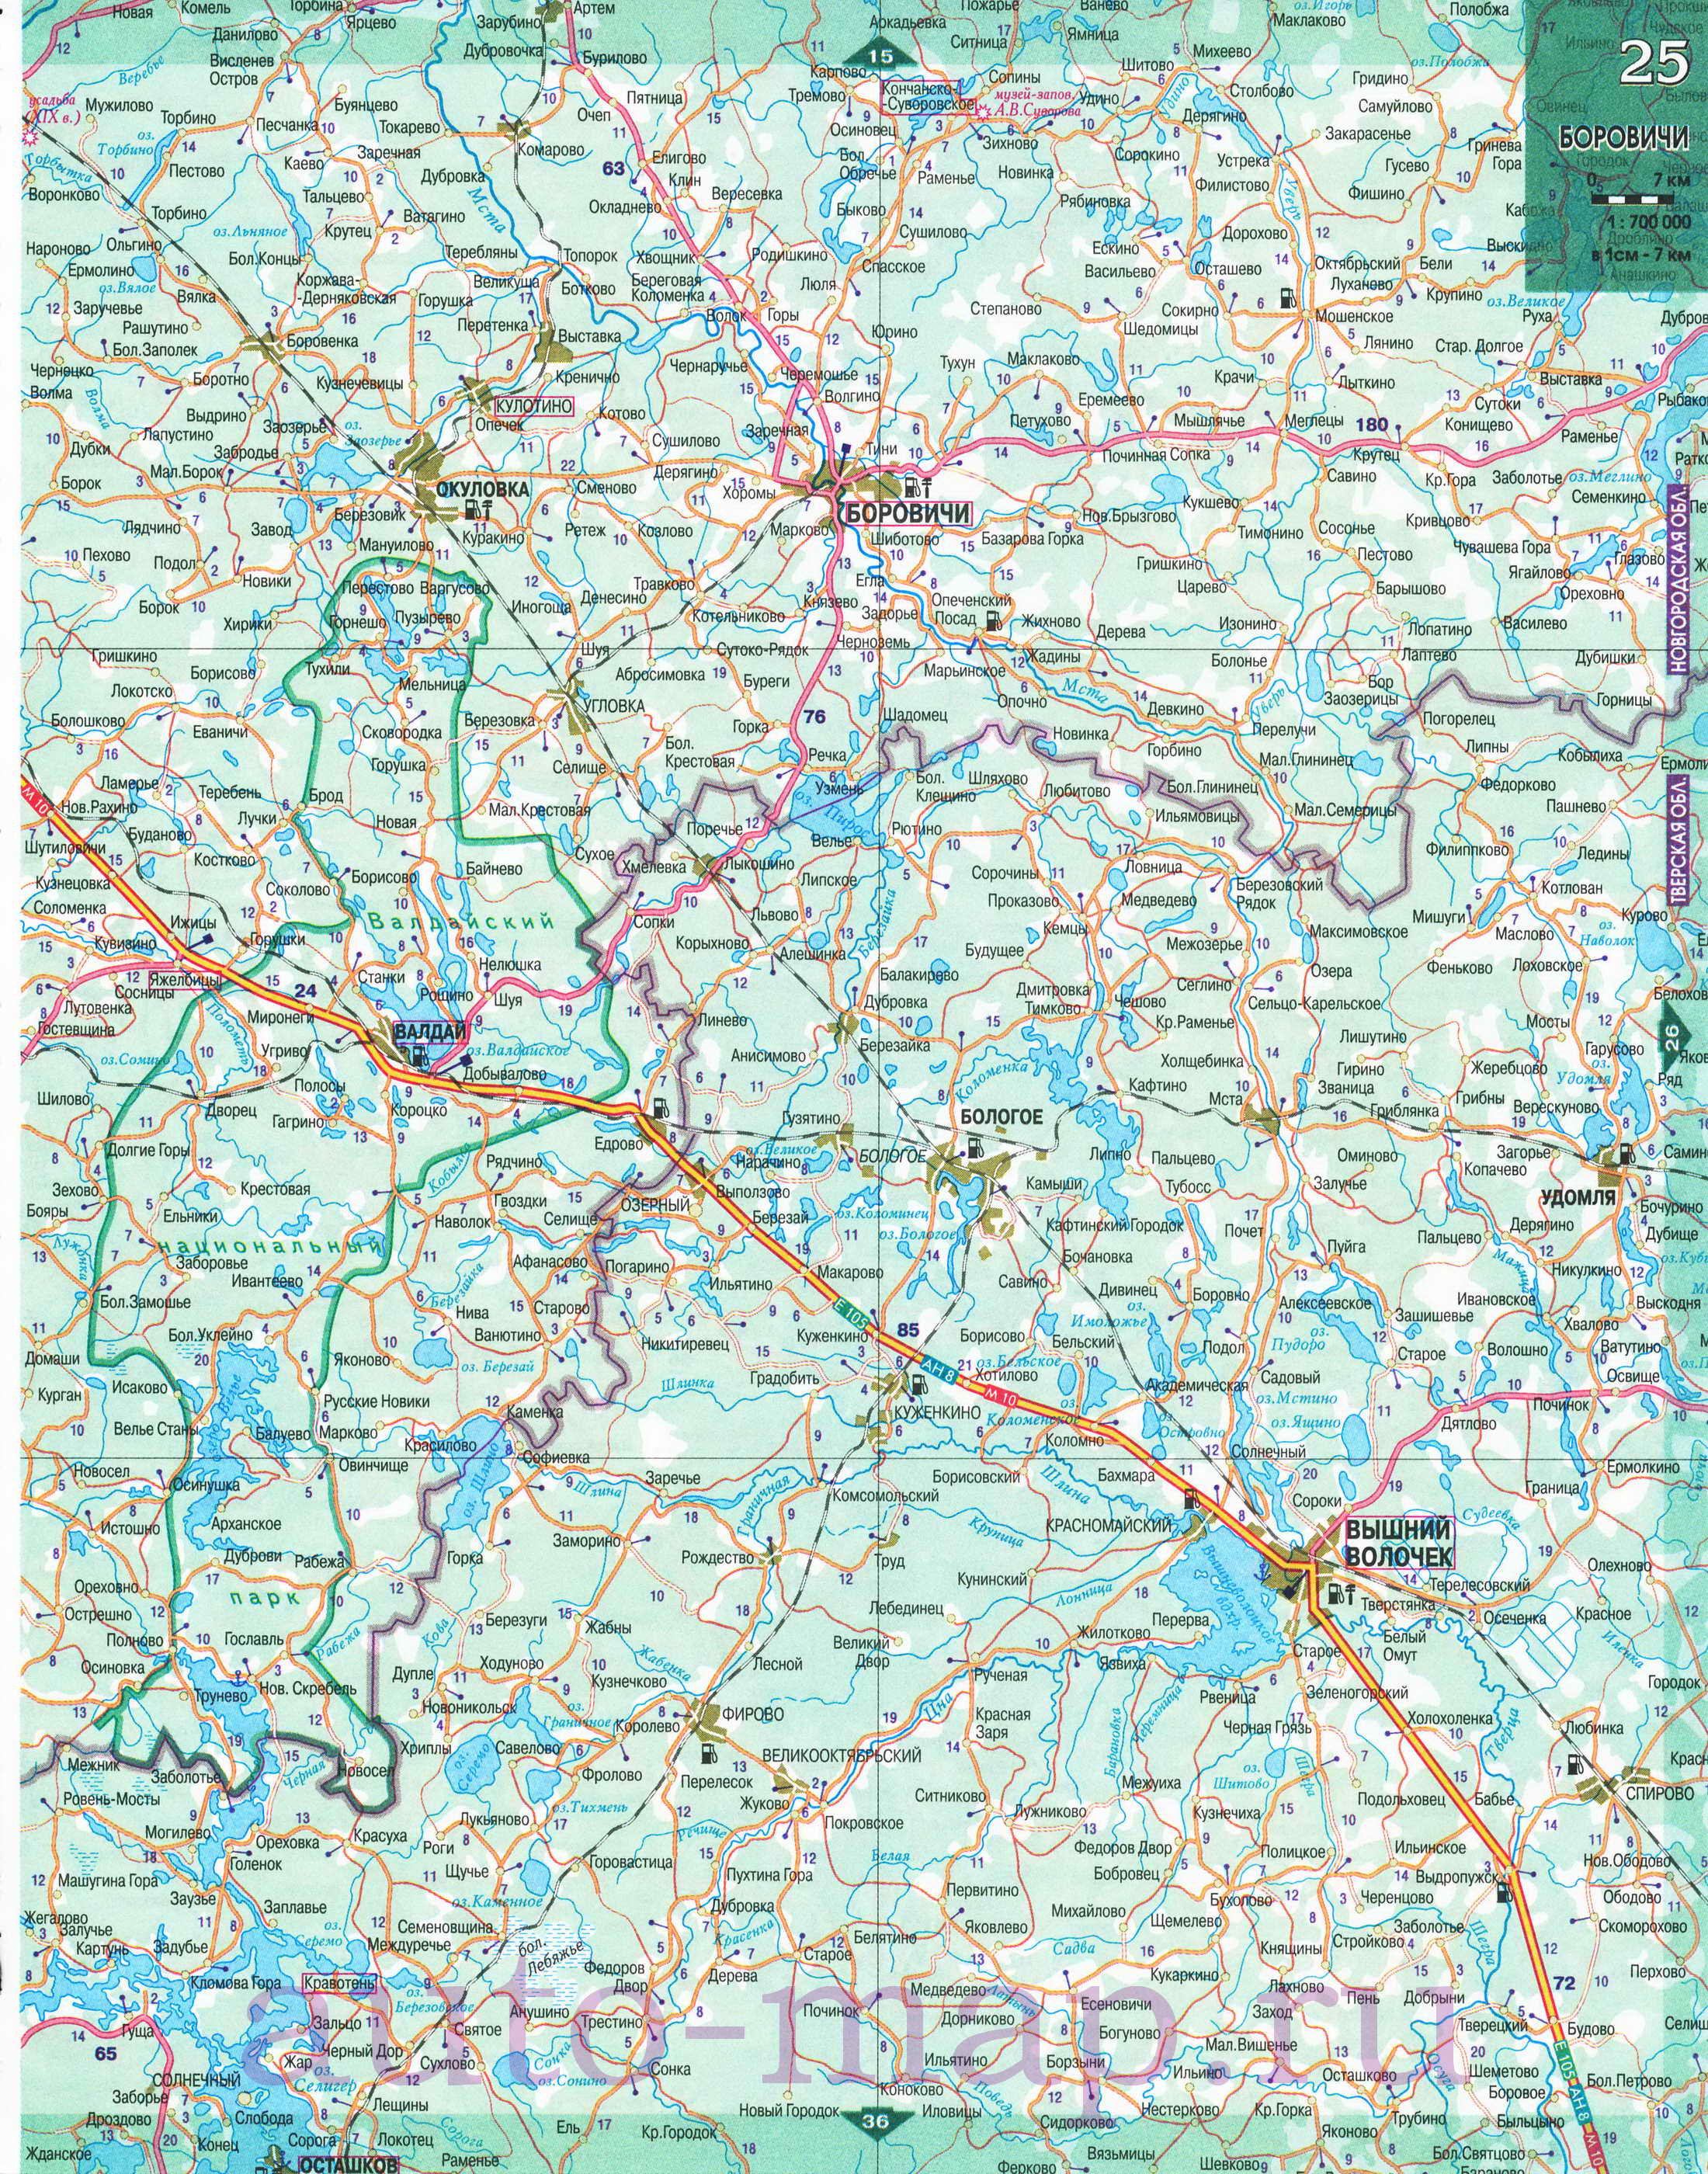 Карта Северо-Западного региона России. Подробная крупномасштабная карта автодорог Северо-Запада России, D1 - 